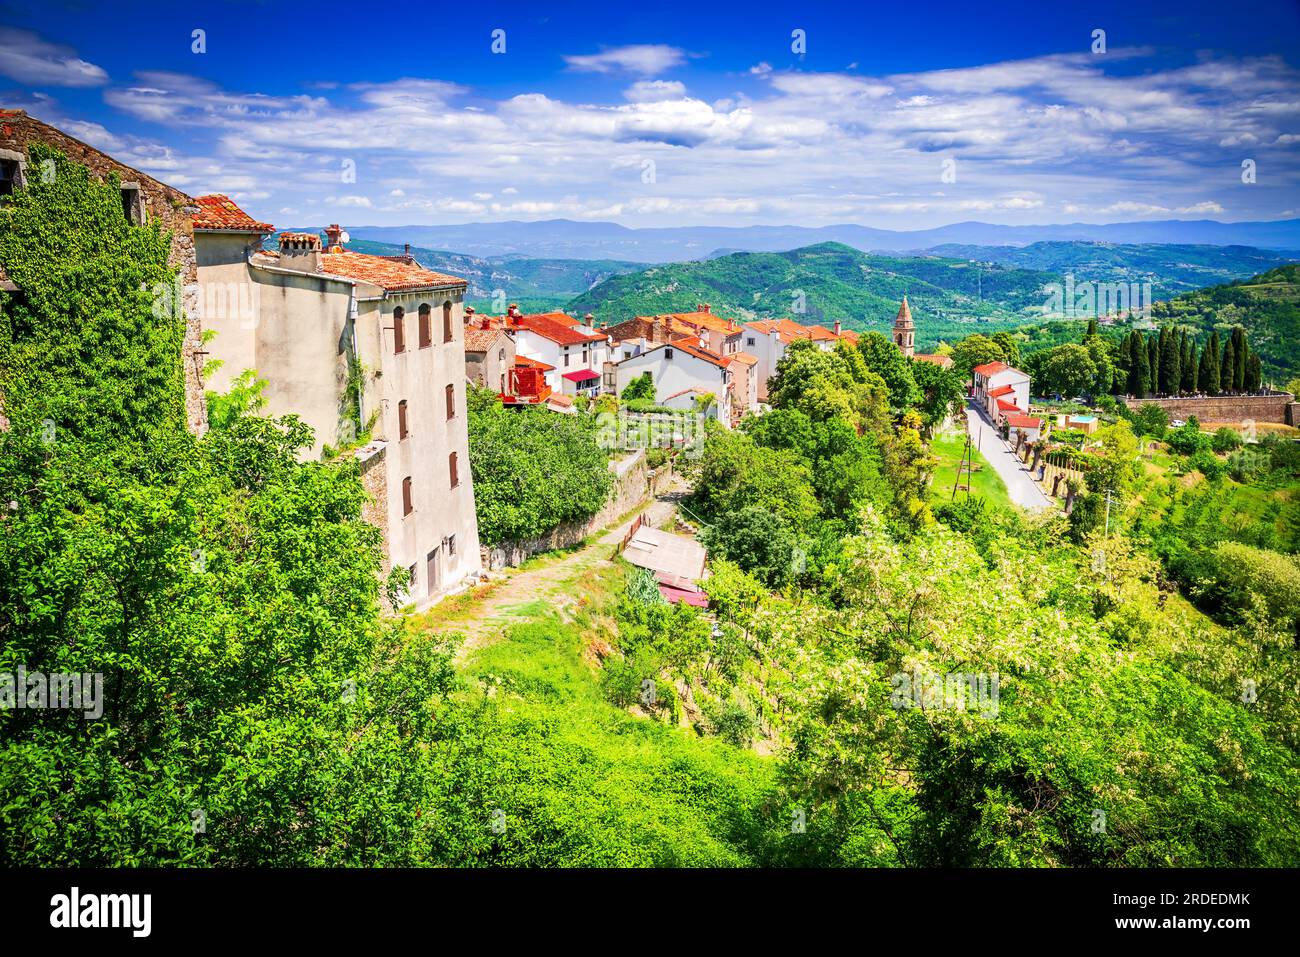 Motovun, Kroatien. Malerische historische Stadt Motovun auf idyllischen grünen Hügel, Reiseziel im Landesinneren Istrien Region von Kroatien. Stockfoto